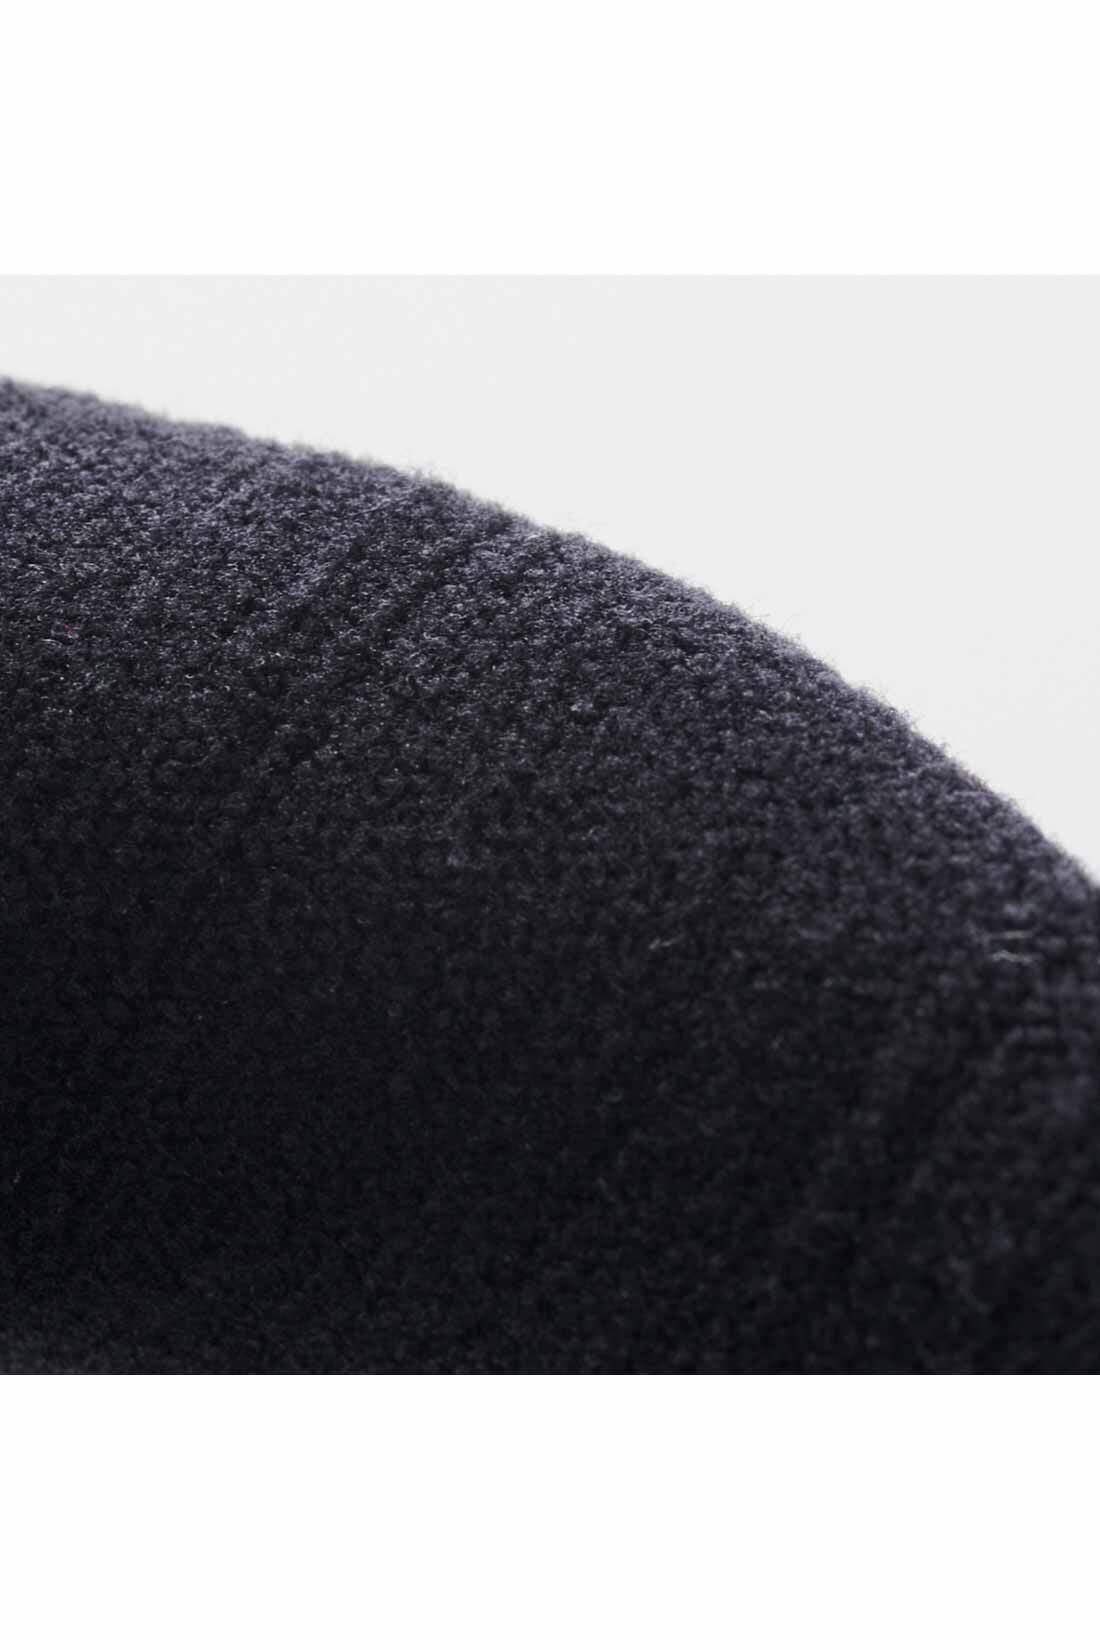 THREE FIFTY STANDARD|THREE FIFTY STANDARD　おなかゆったりはきタイツ|腹部は空気を含みやすいふんわりしたパイル編みで暖かいのが魅力。